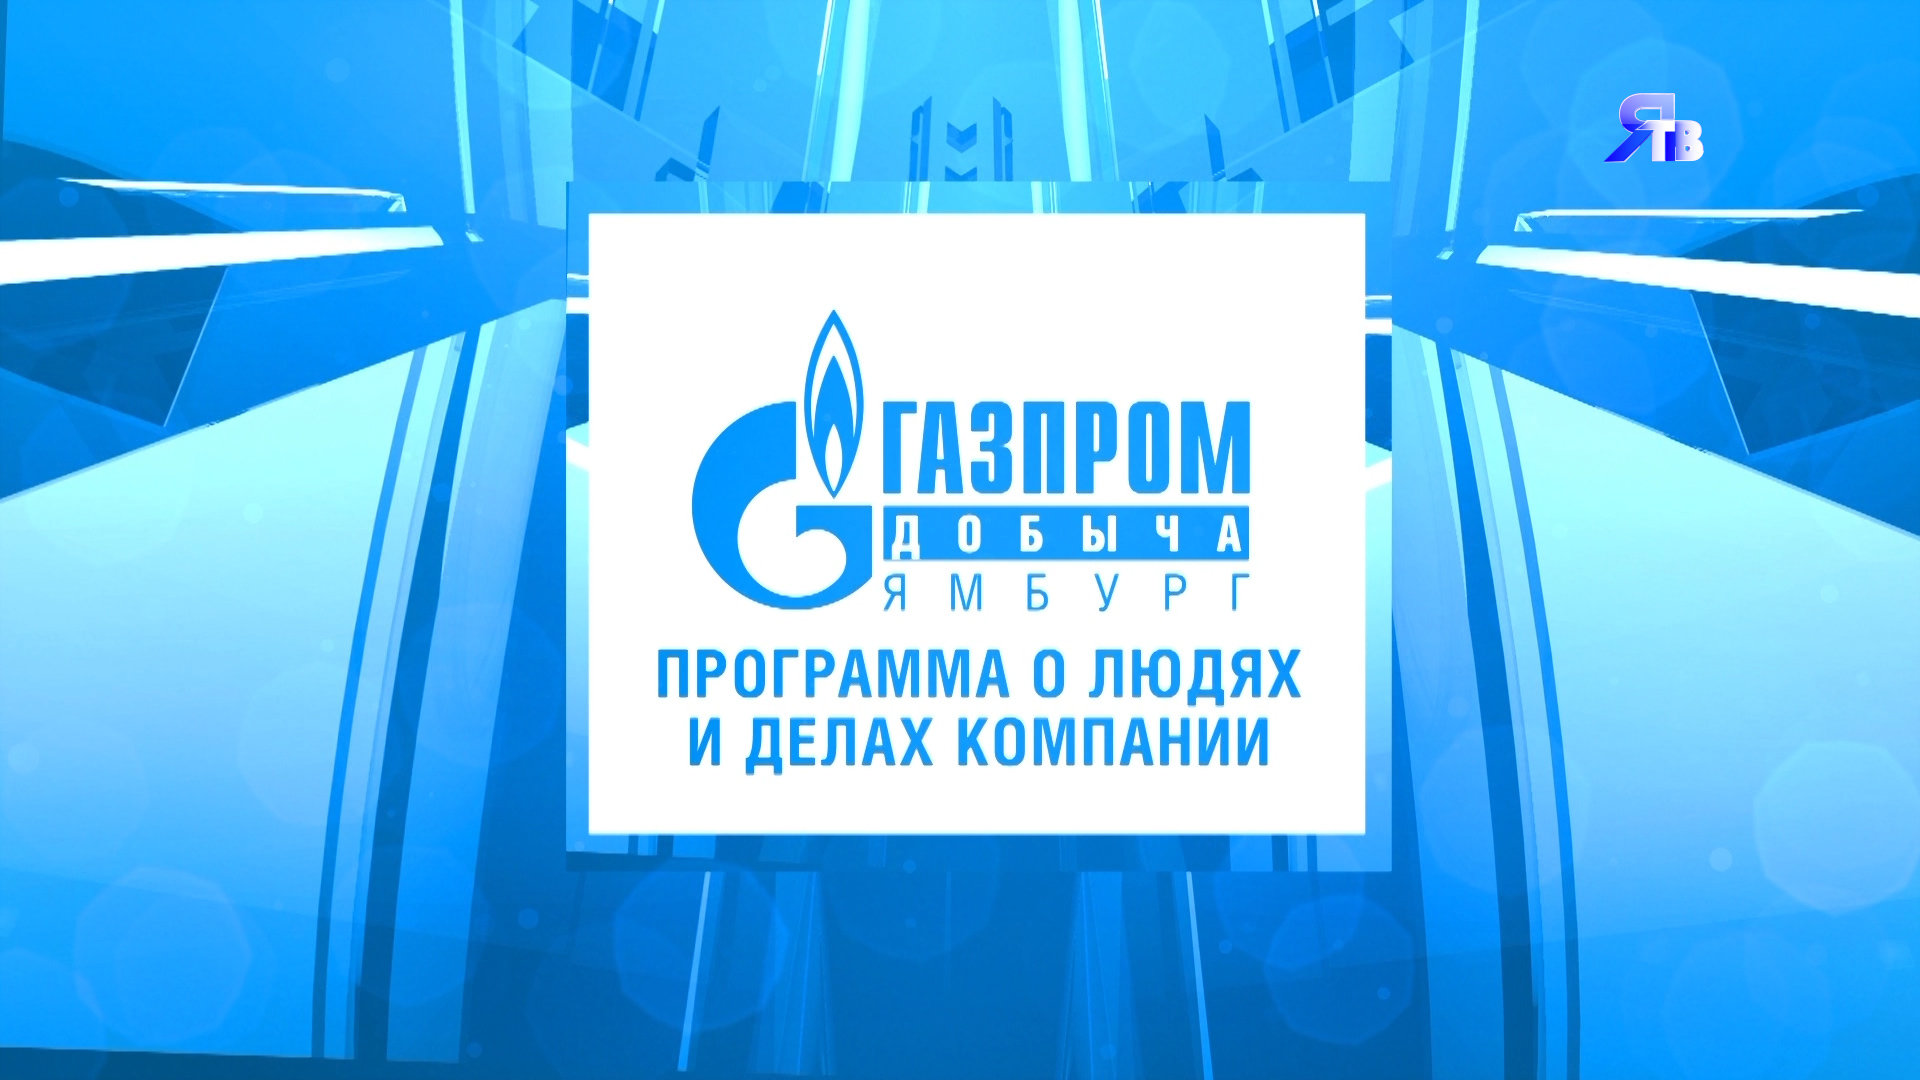 26 сентября / Программа о людях и делах компании ООО "Газпром добыча Ямбург"